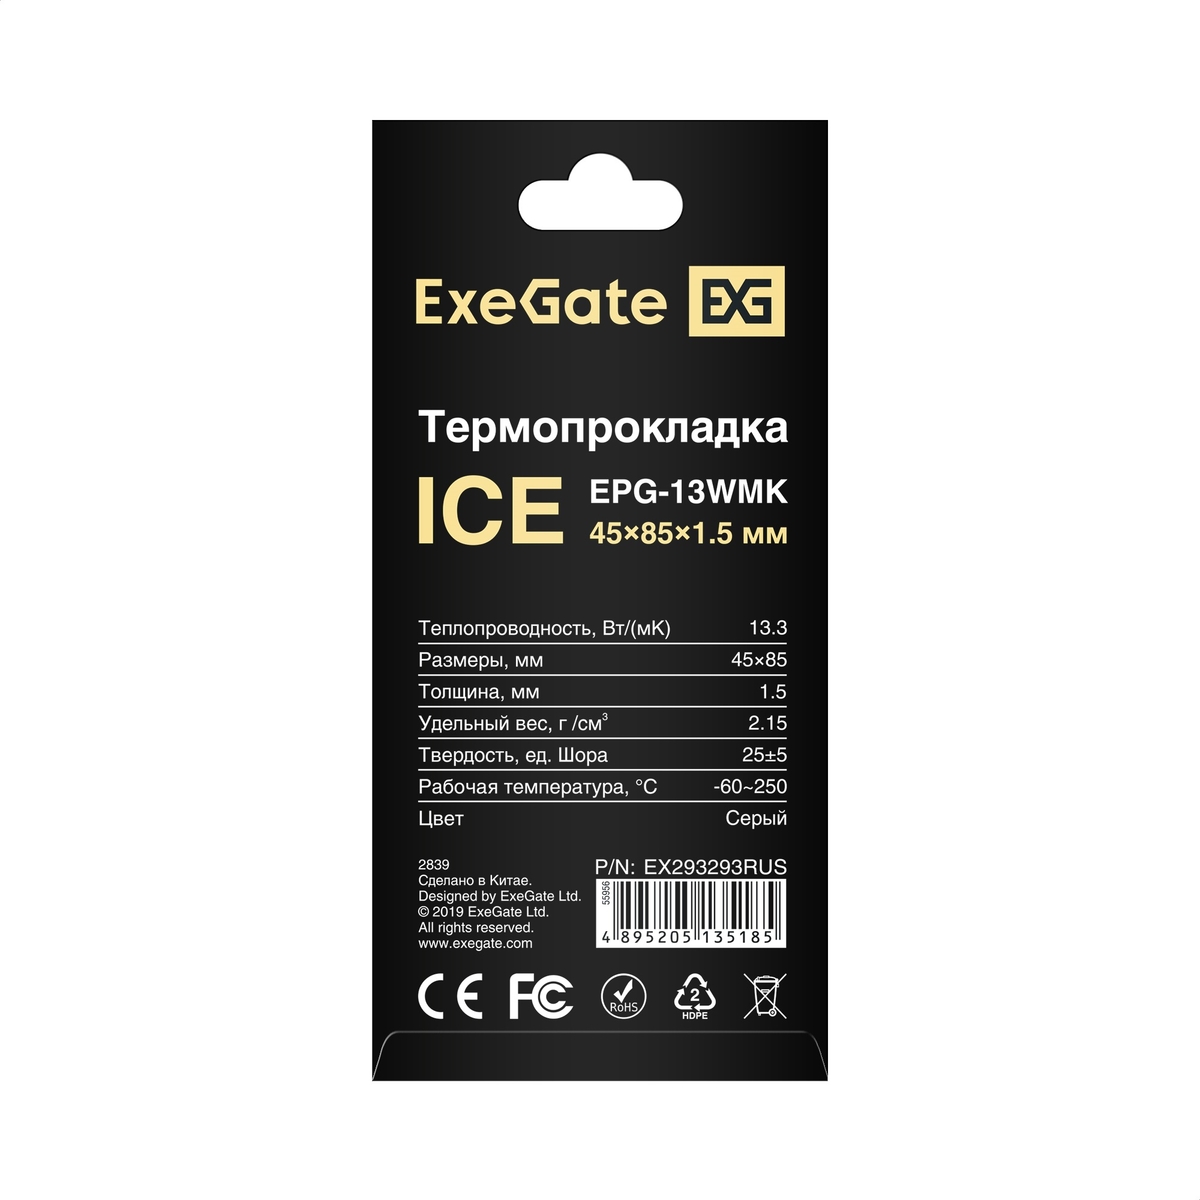  ExeGate Ice EPG-13WMK 45x85x1.5